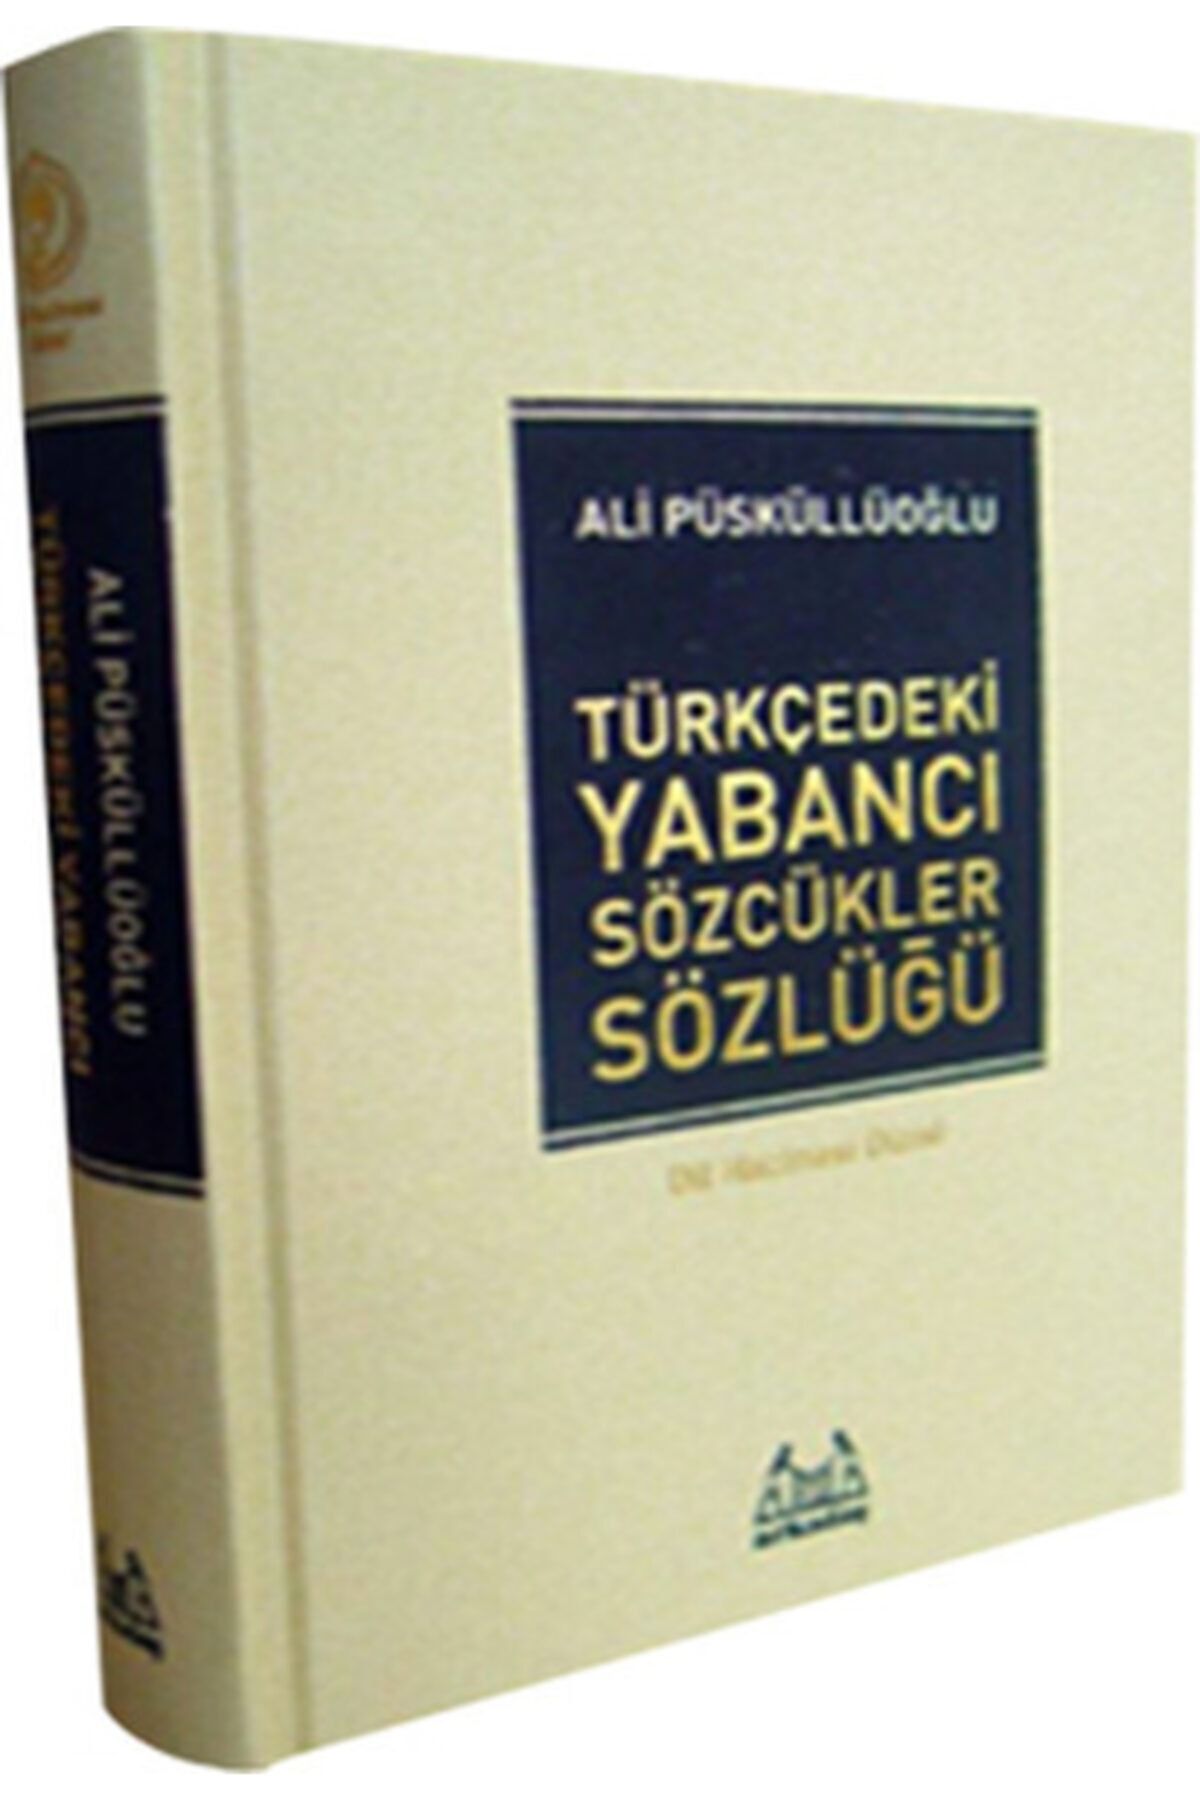 Arkadaş Yayıncılık Türkçe'deki Yabancı Sözcükler Sözlüğü